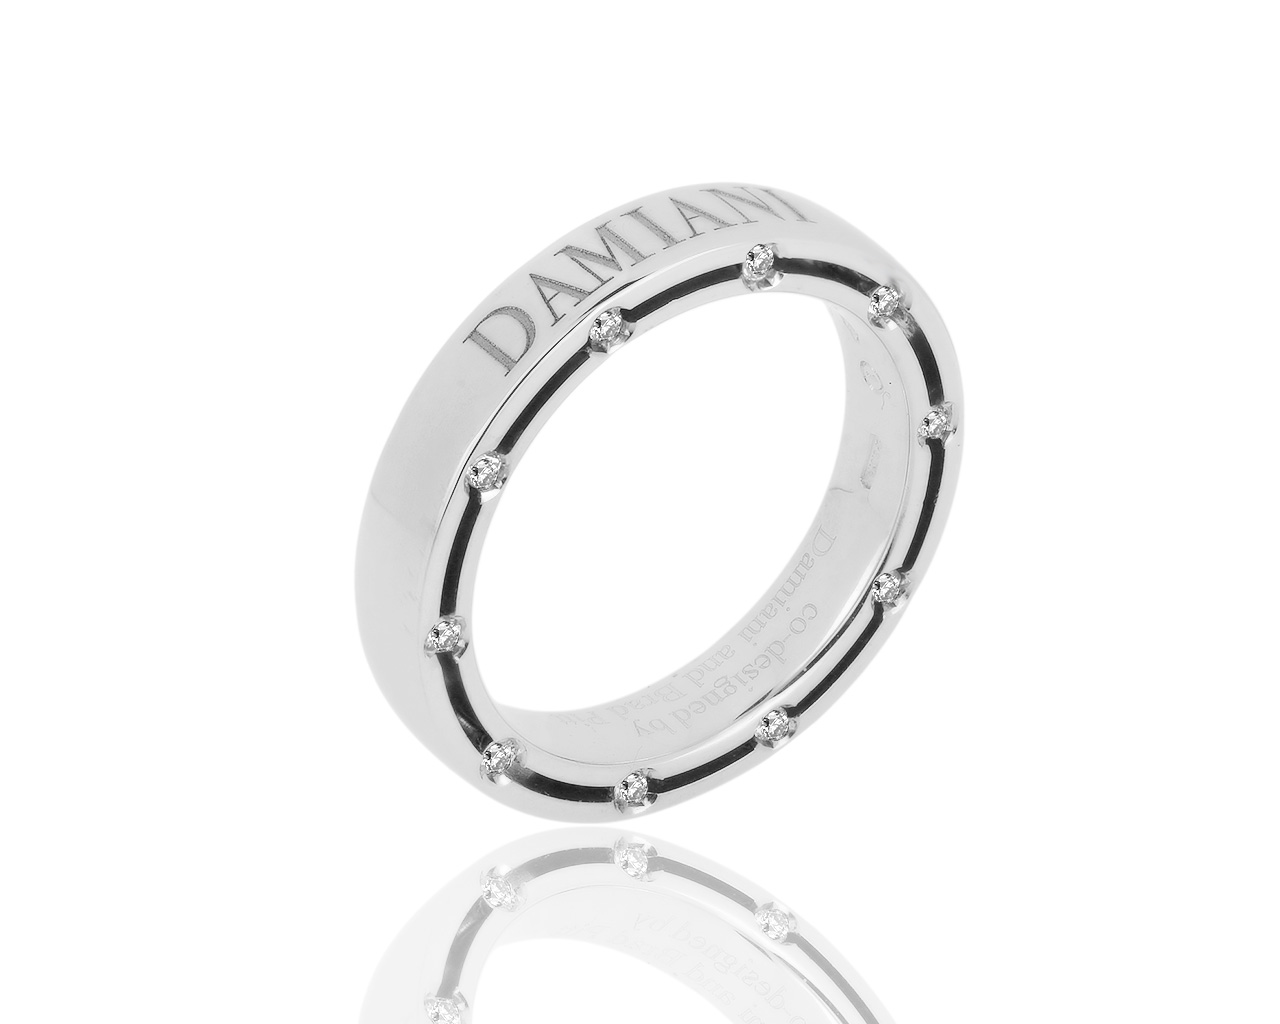 Оригинальное золотое кольцо с бриллиантами 0.18ct Damiani